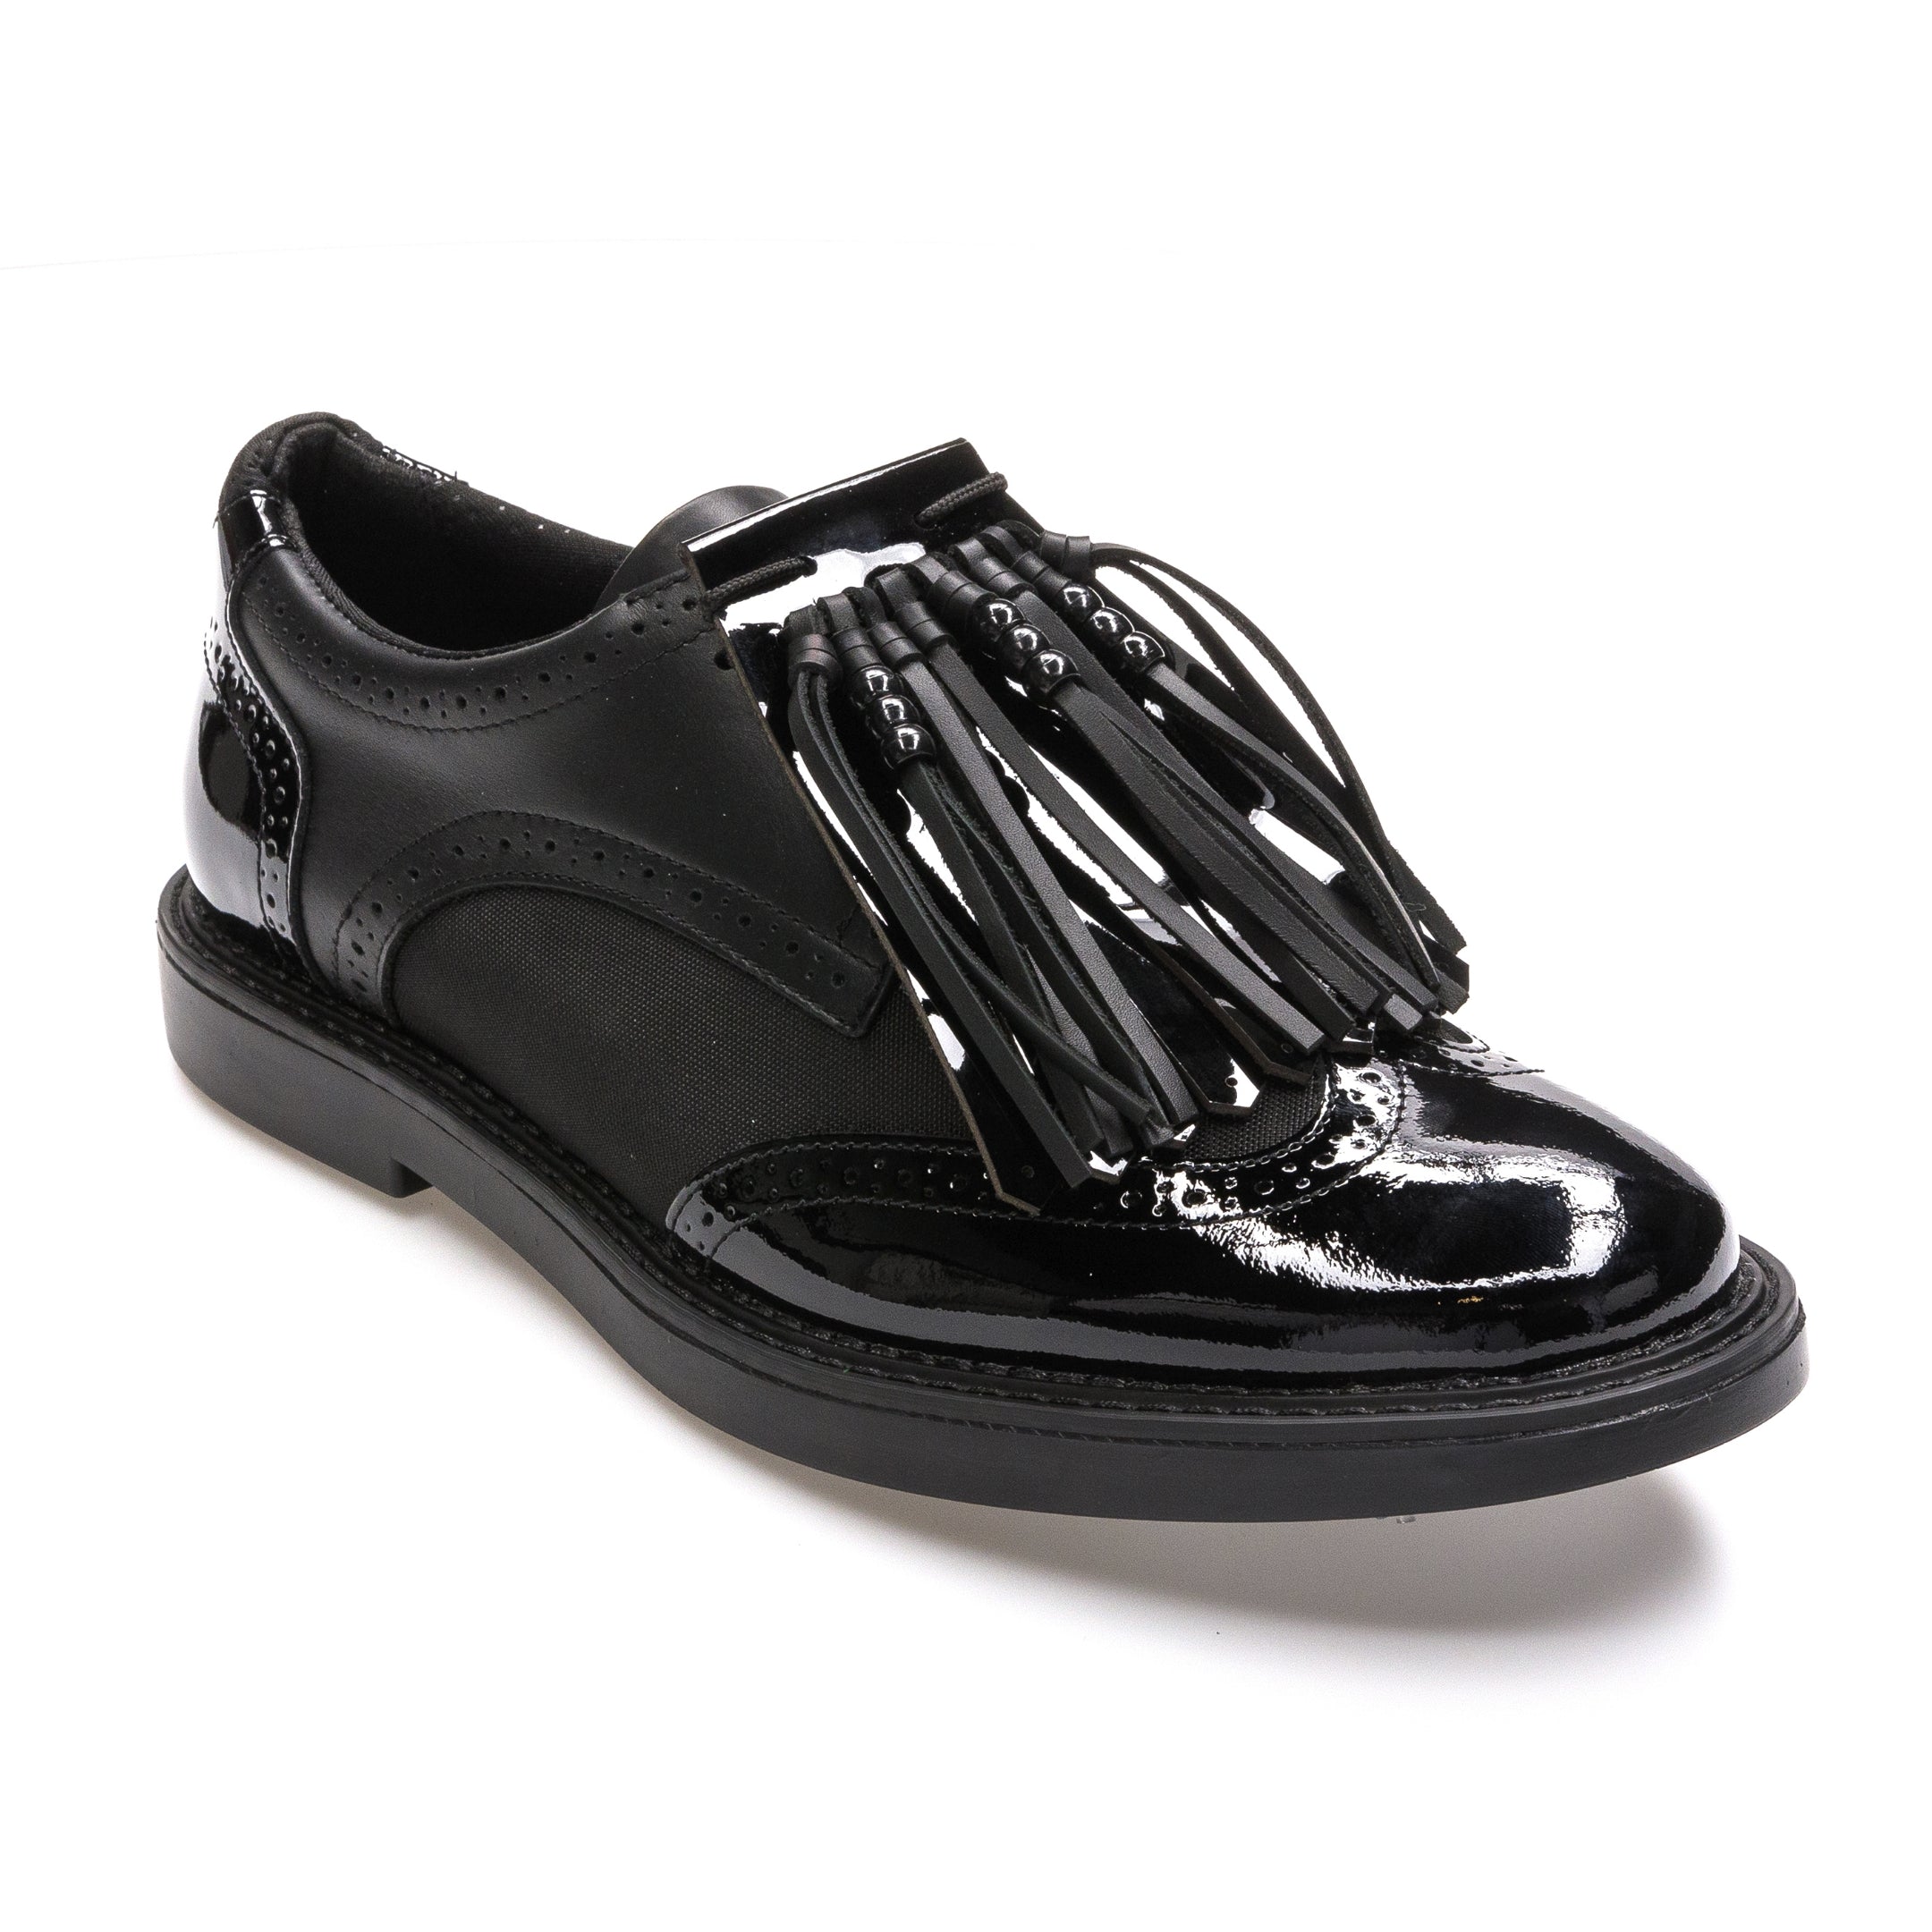 Greyson Footwear – Greyson Clothiers